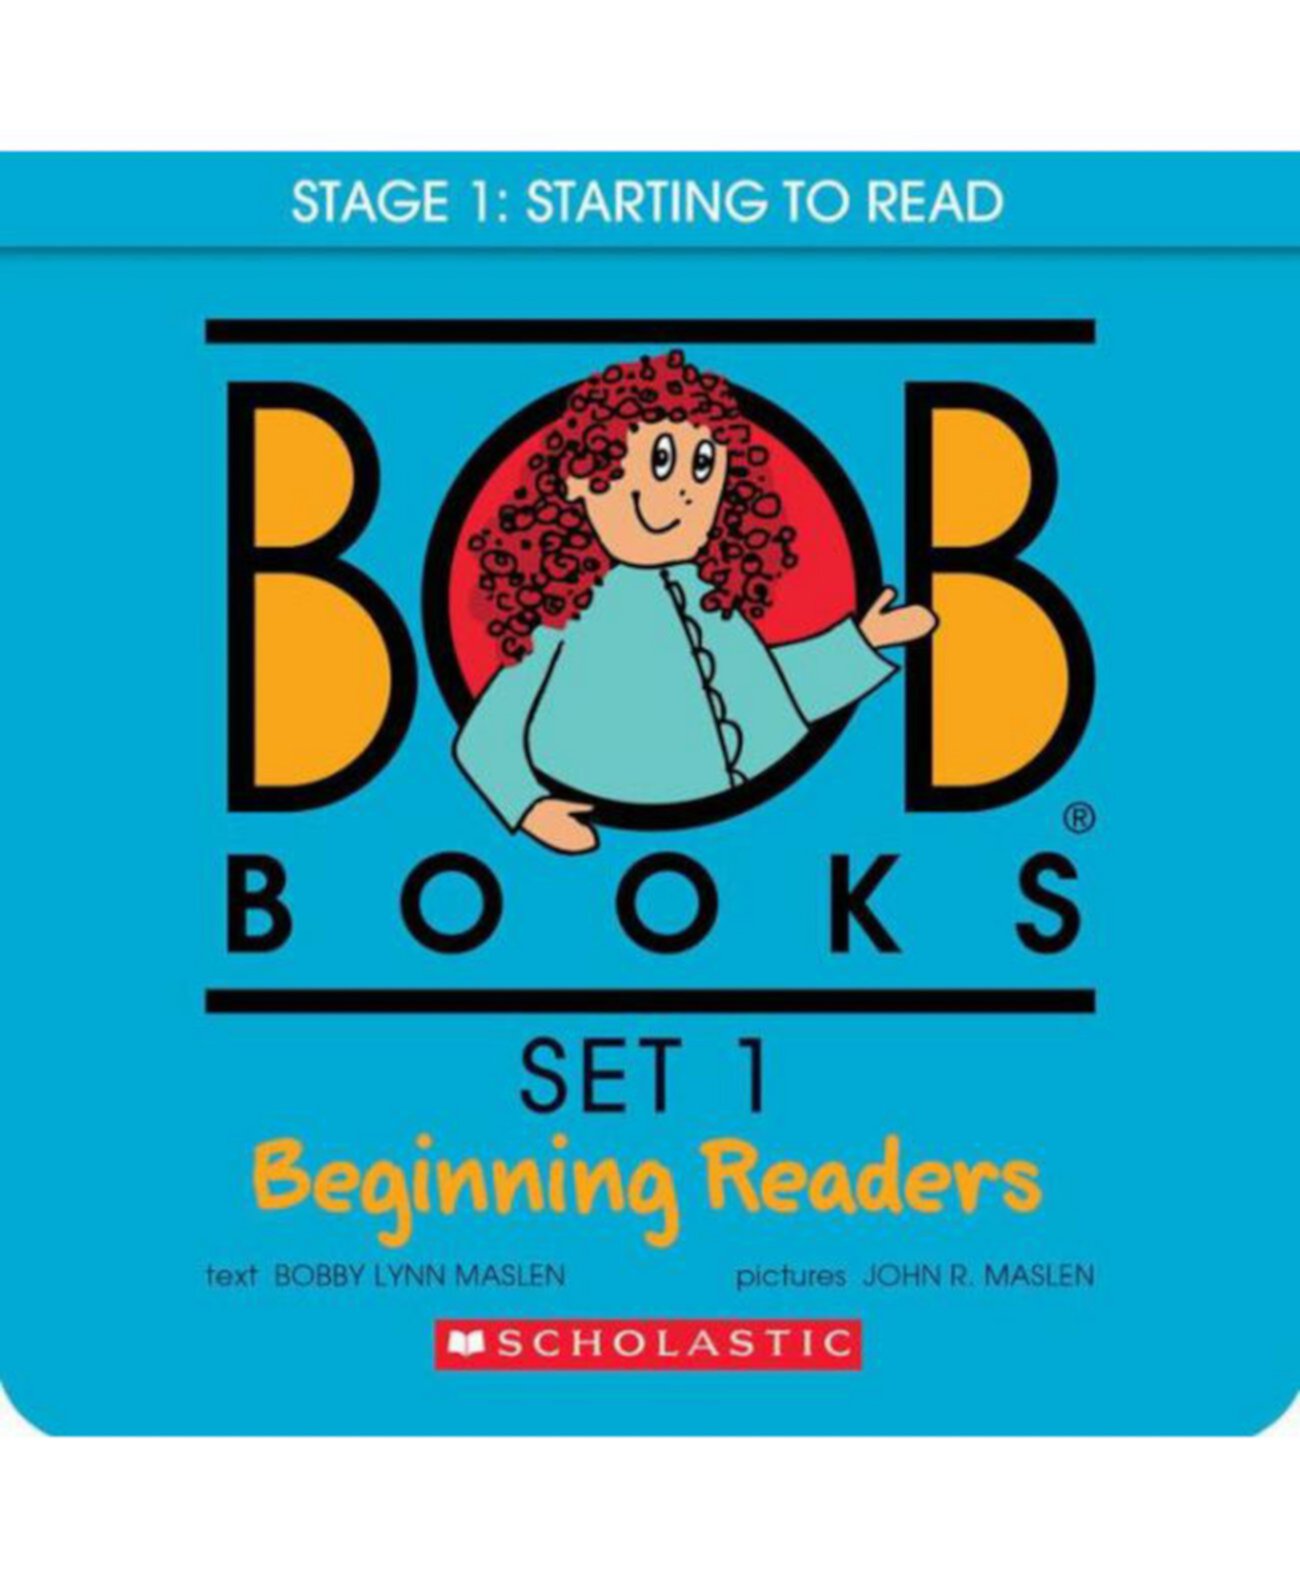 Набор 1 Bob Books — серия книг Bob Books для начинающих читателей Джона Р. Маслена Barnes & Noble